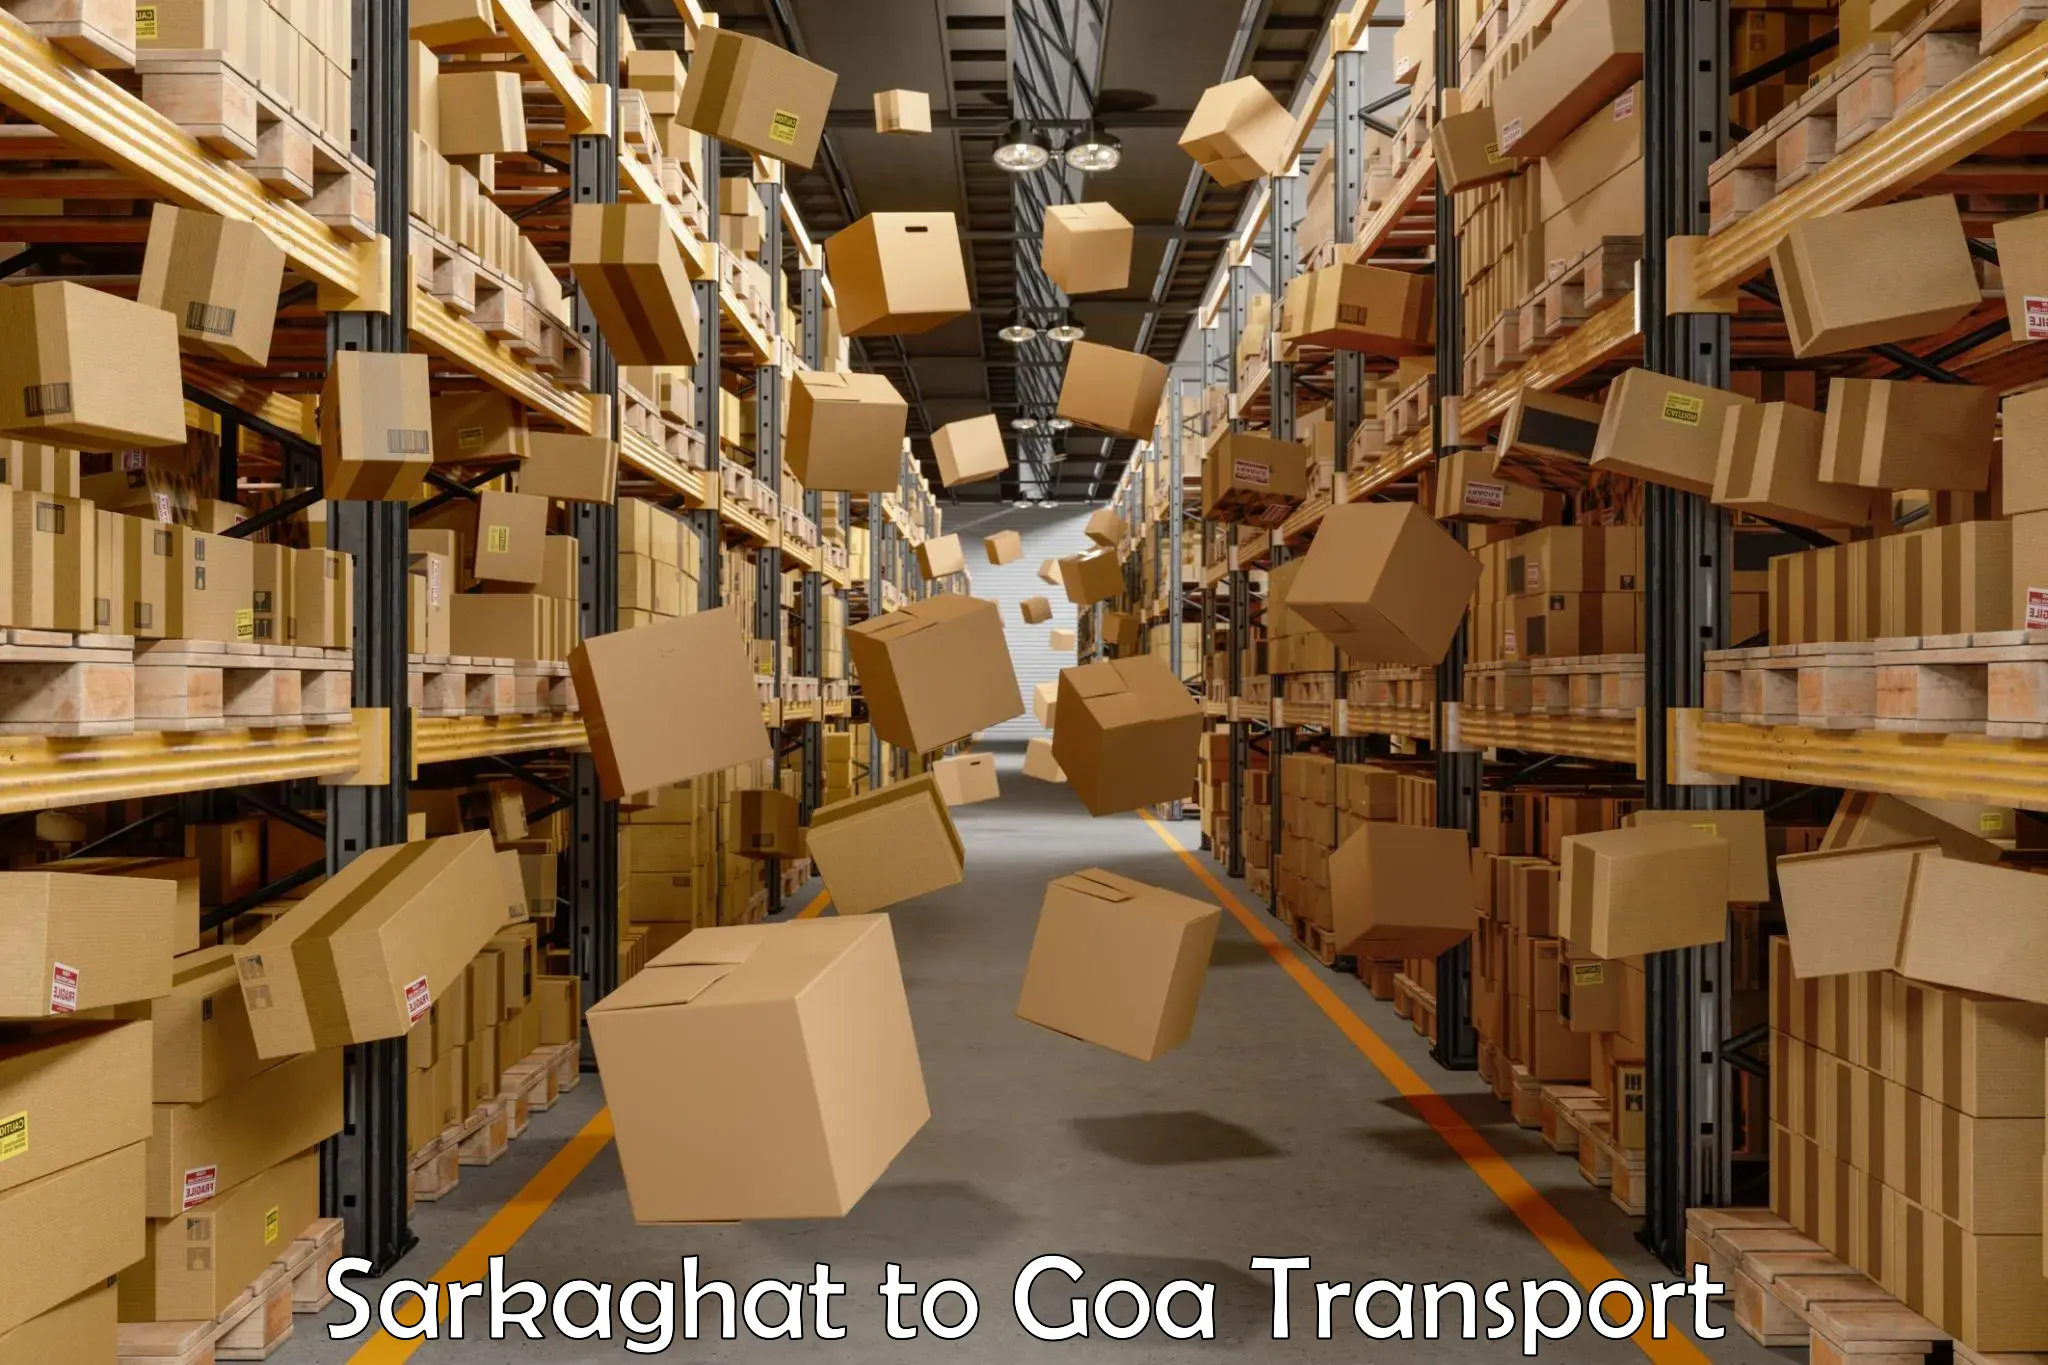 Road transport online services Sarkaghat to Sanvordem